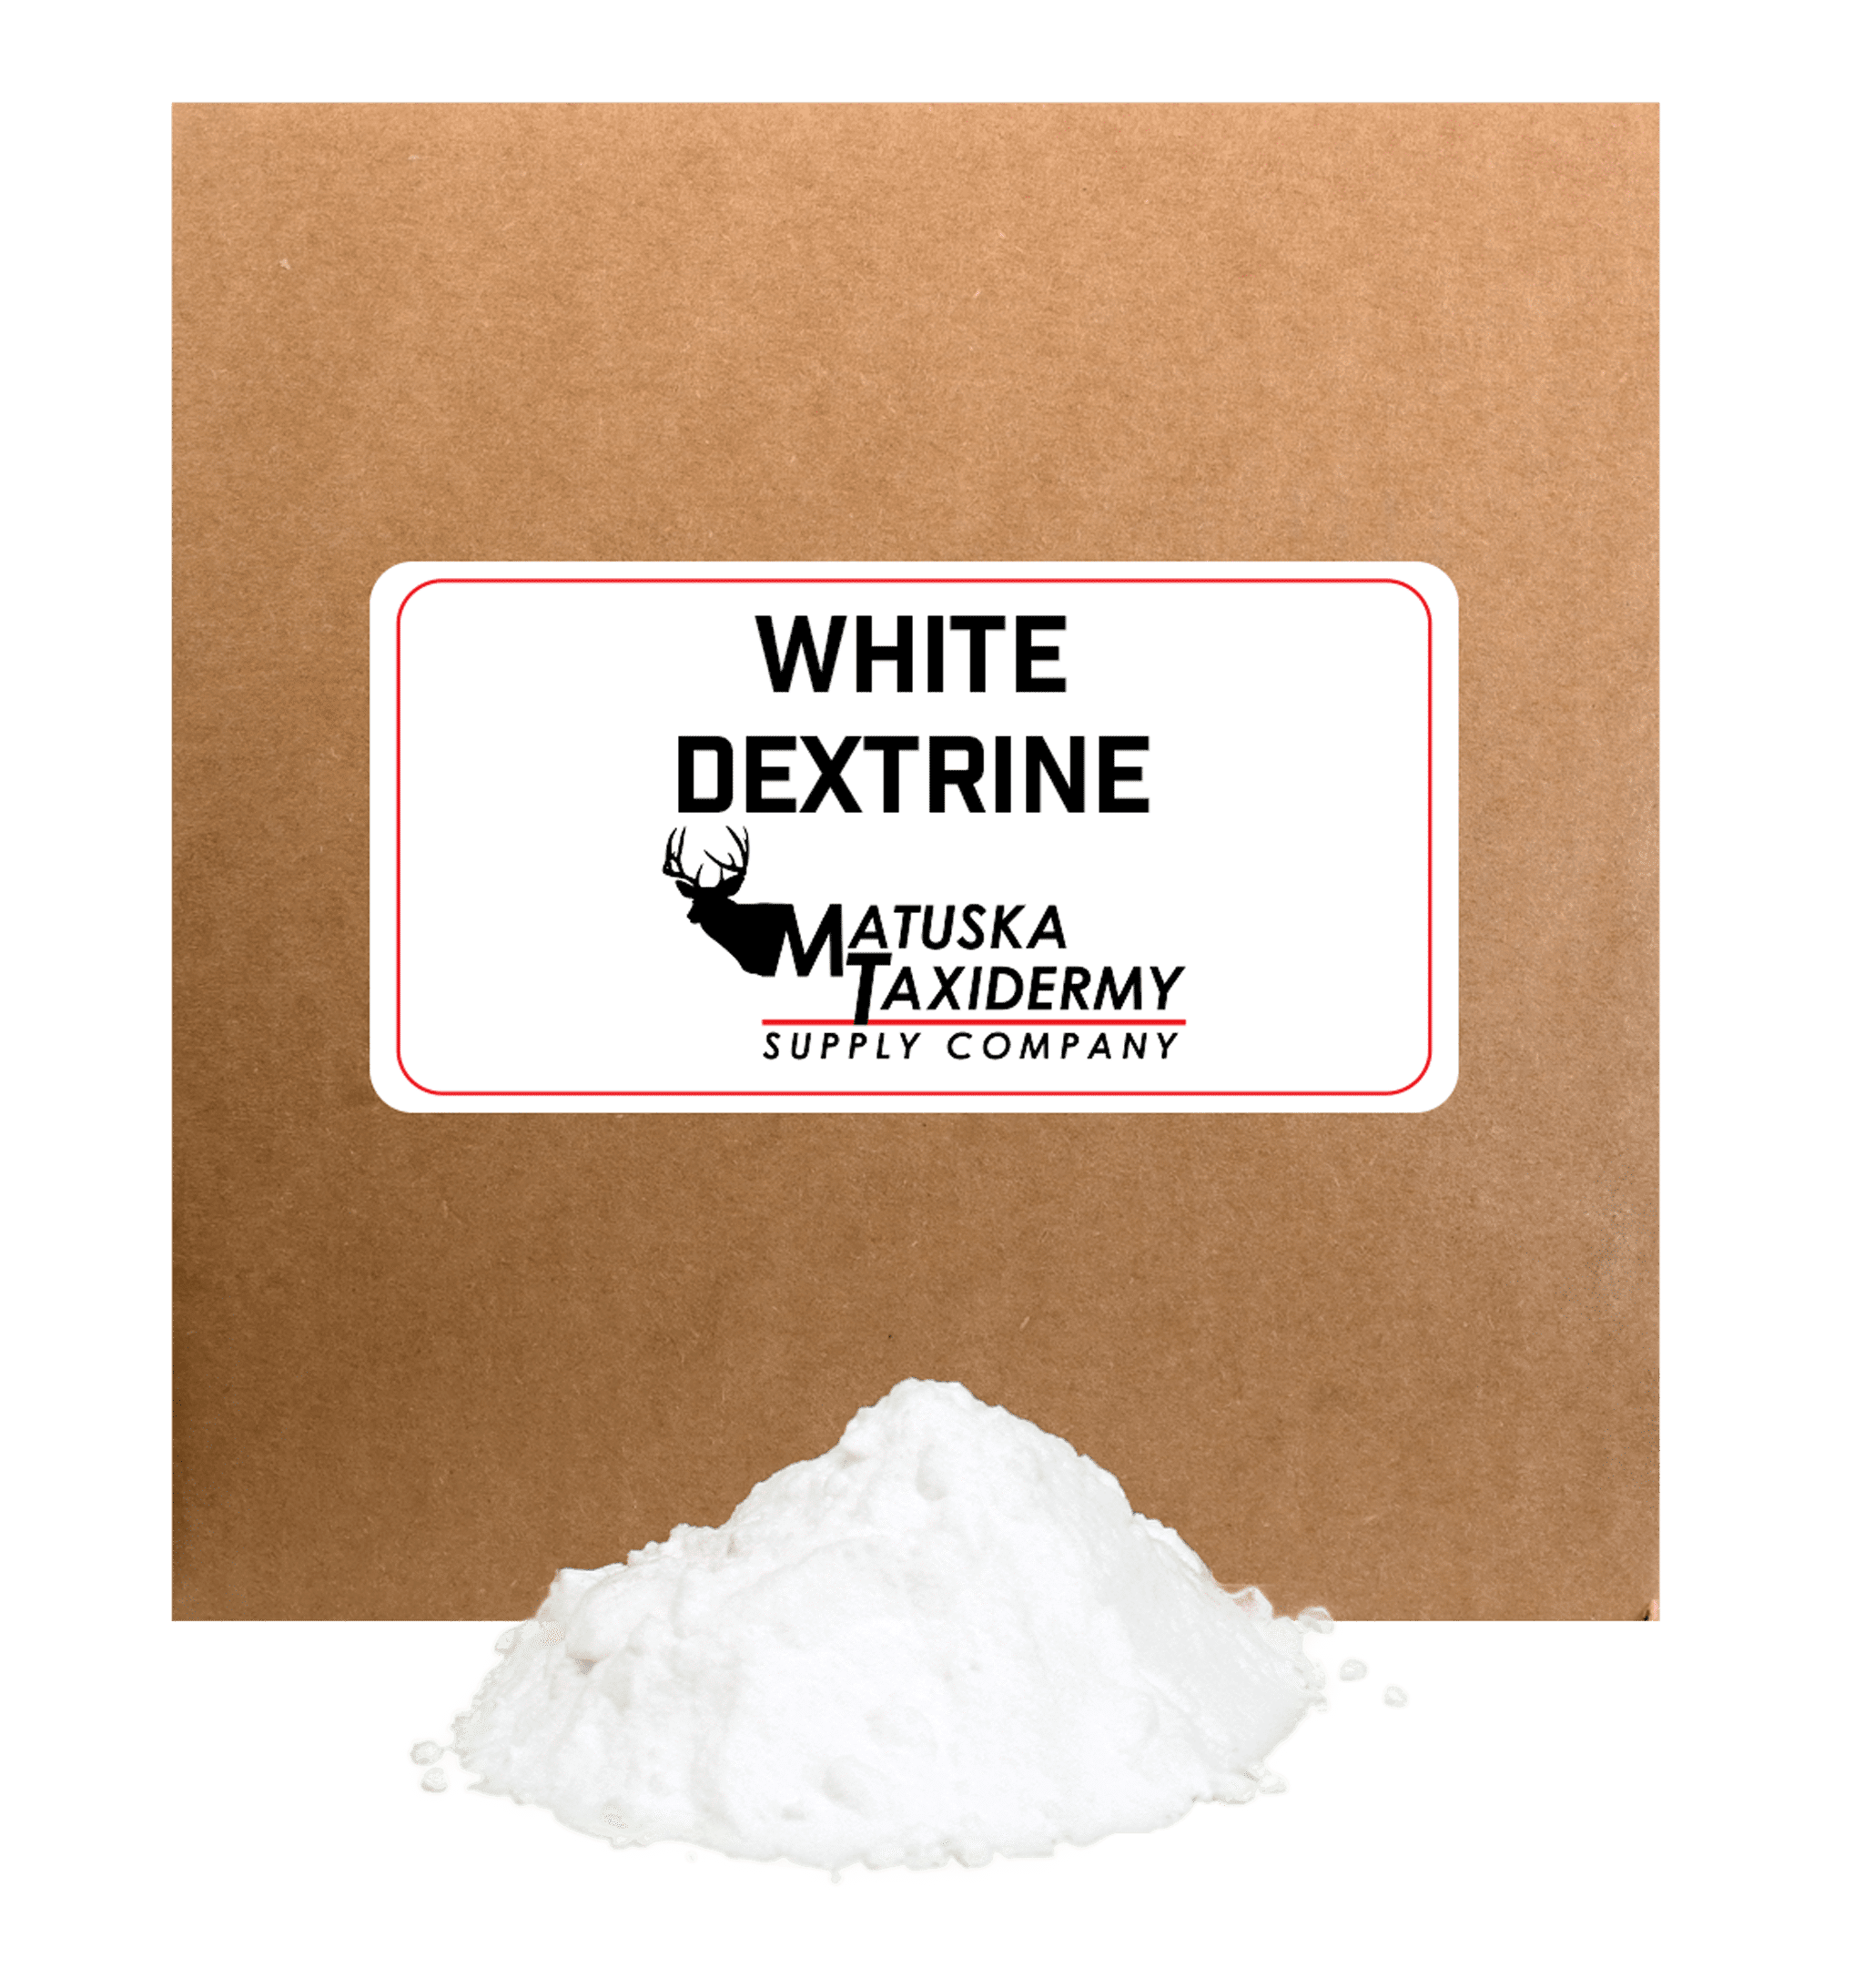 White Dextrine - Matuska Taxidermy Supply Company